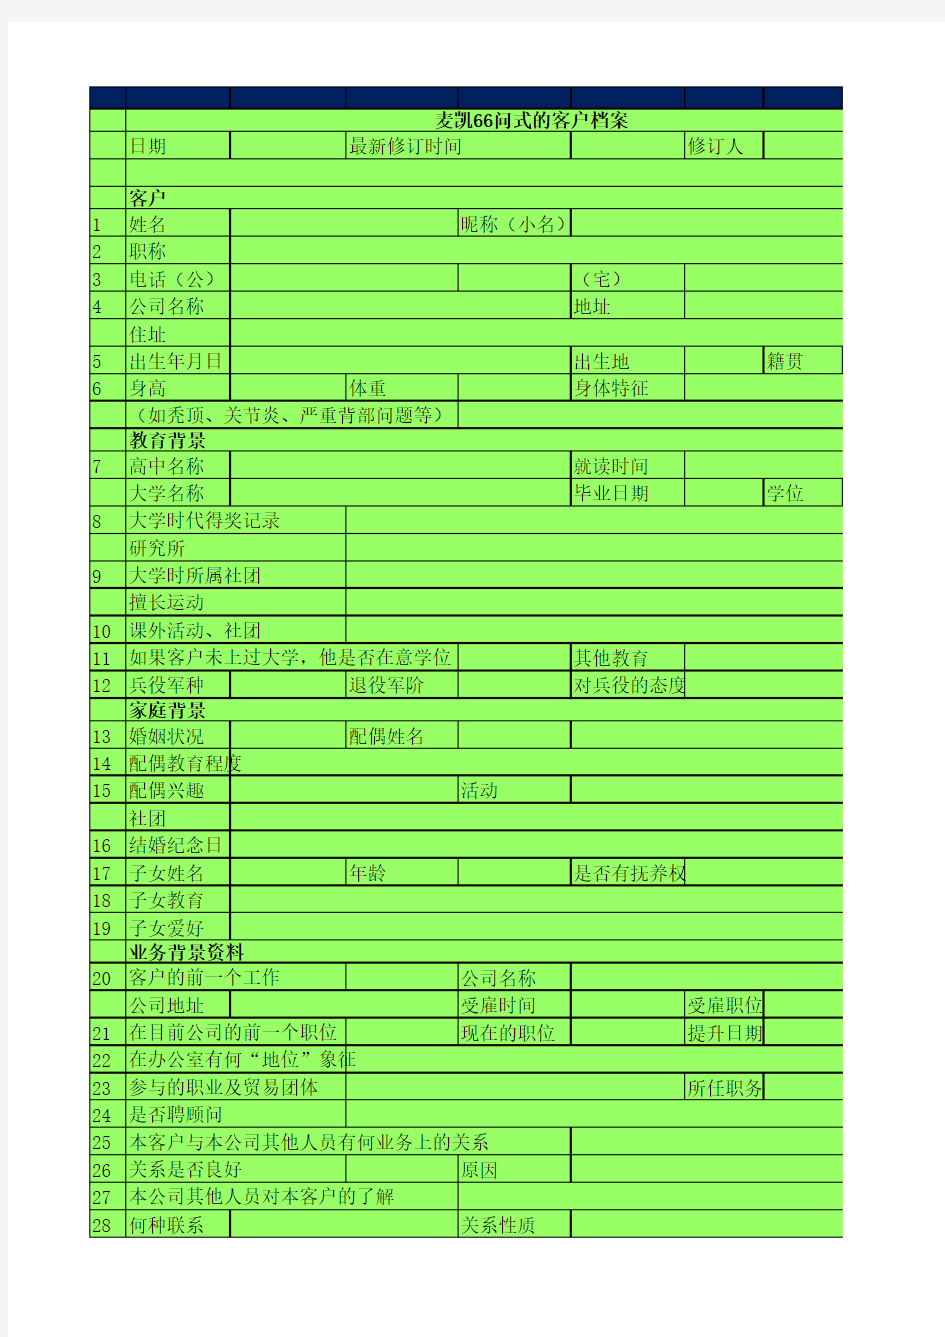 麦凯66客户信息表,2015.11.29更新,中国版